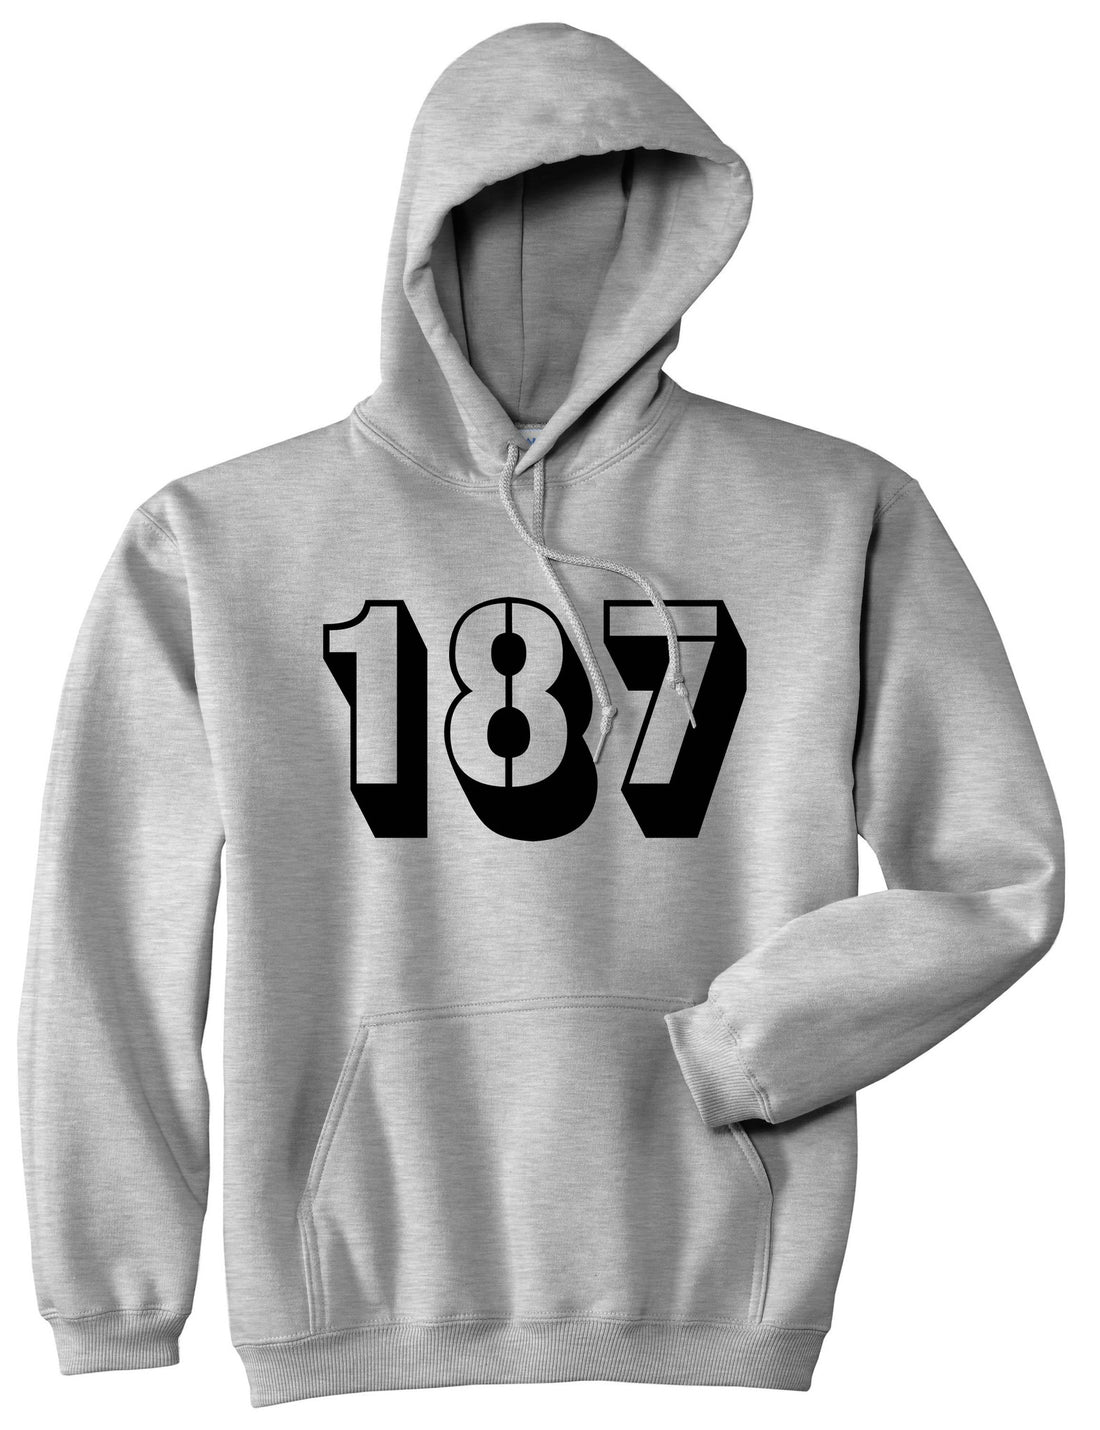 187 Pullover Hoodie Hoody in Grey by Kings Of NY